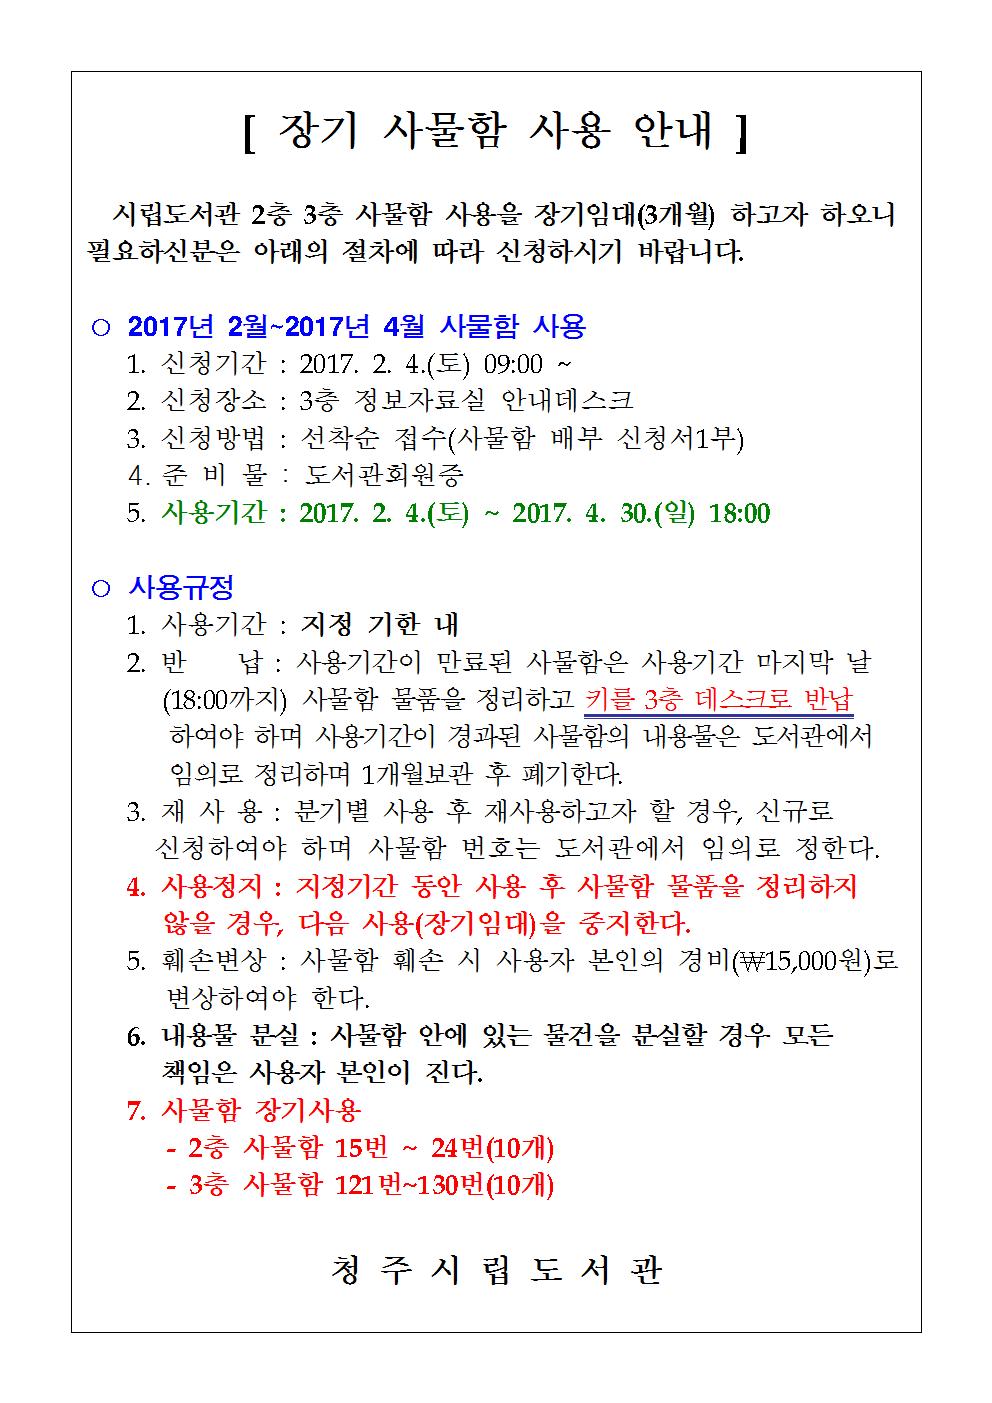 청주시립도서관 사물함 장기사용(2017. 2월~2017. 4월)신청안내